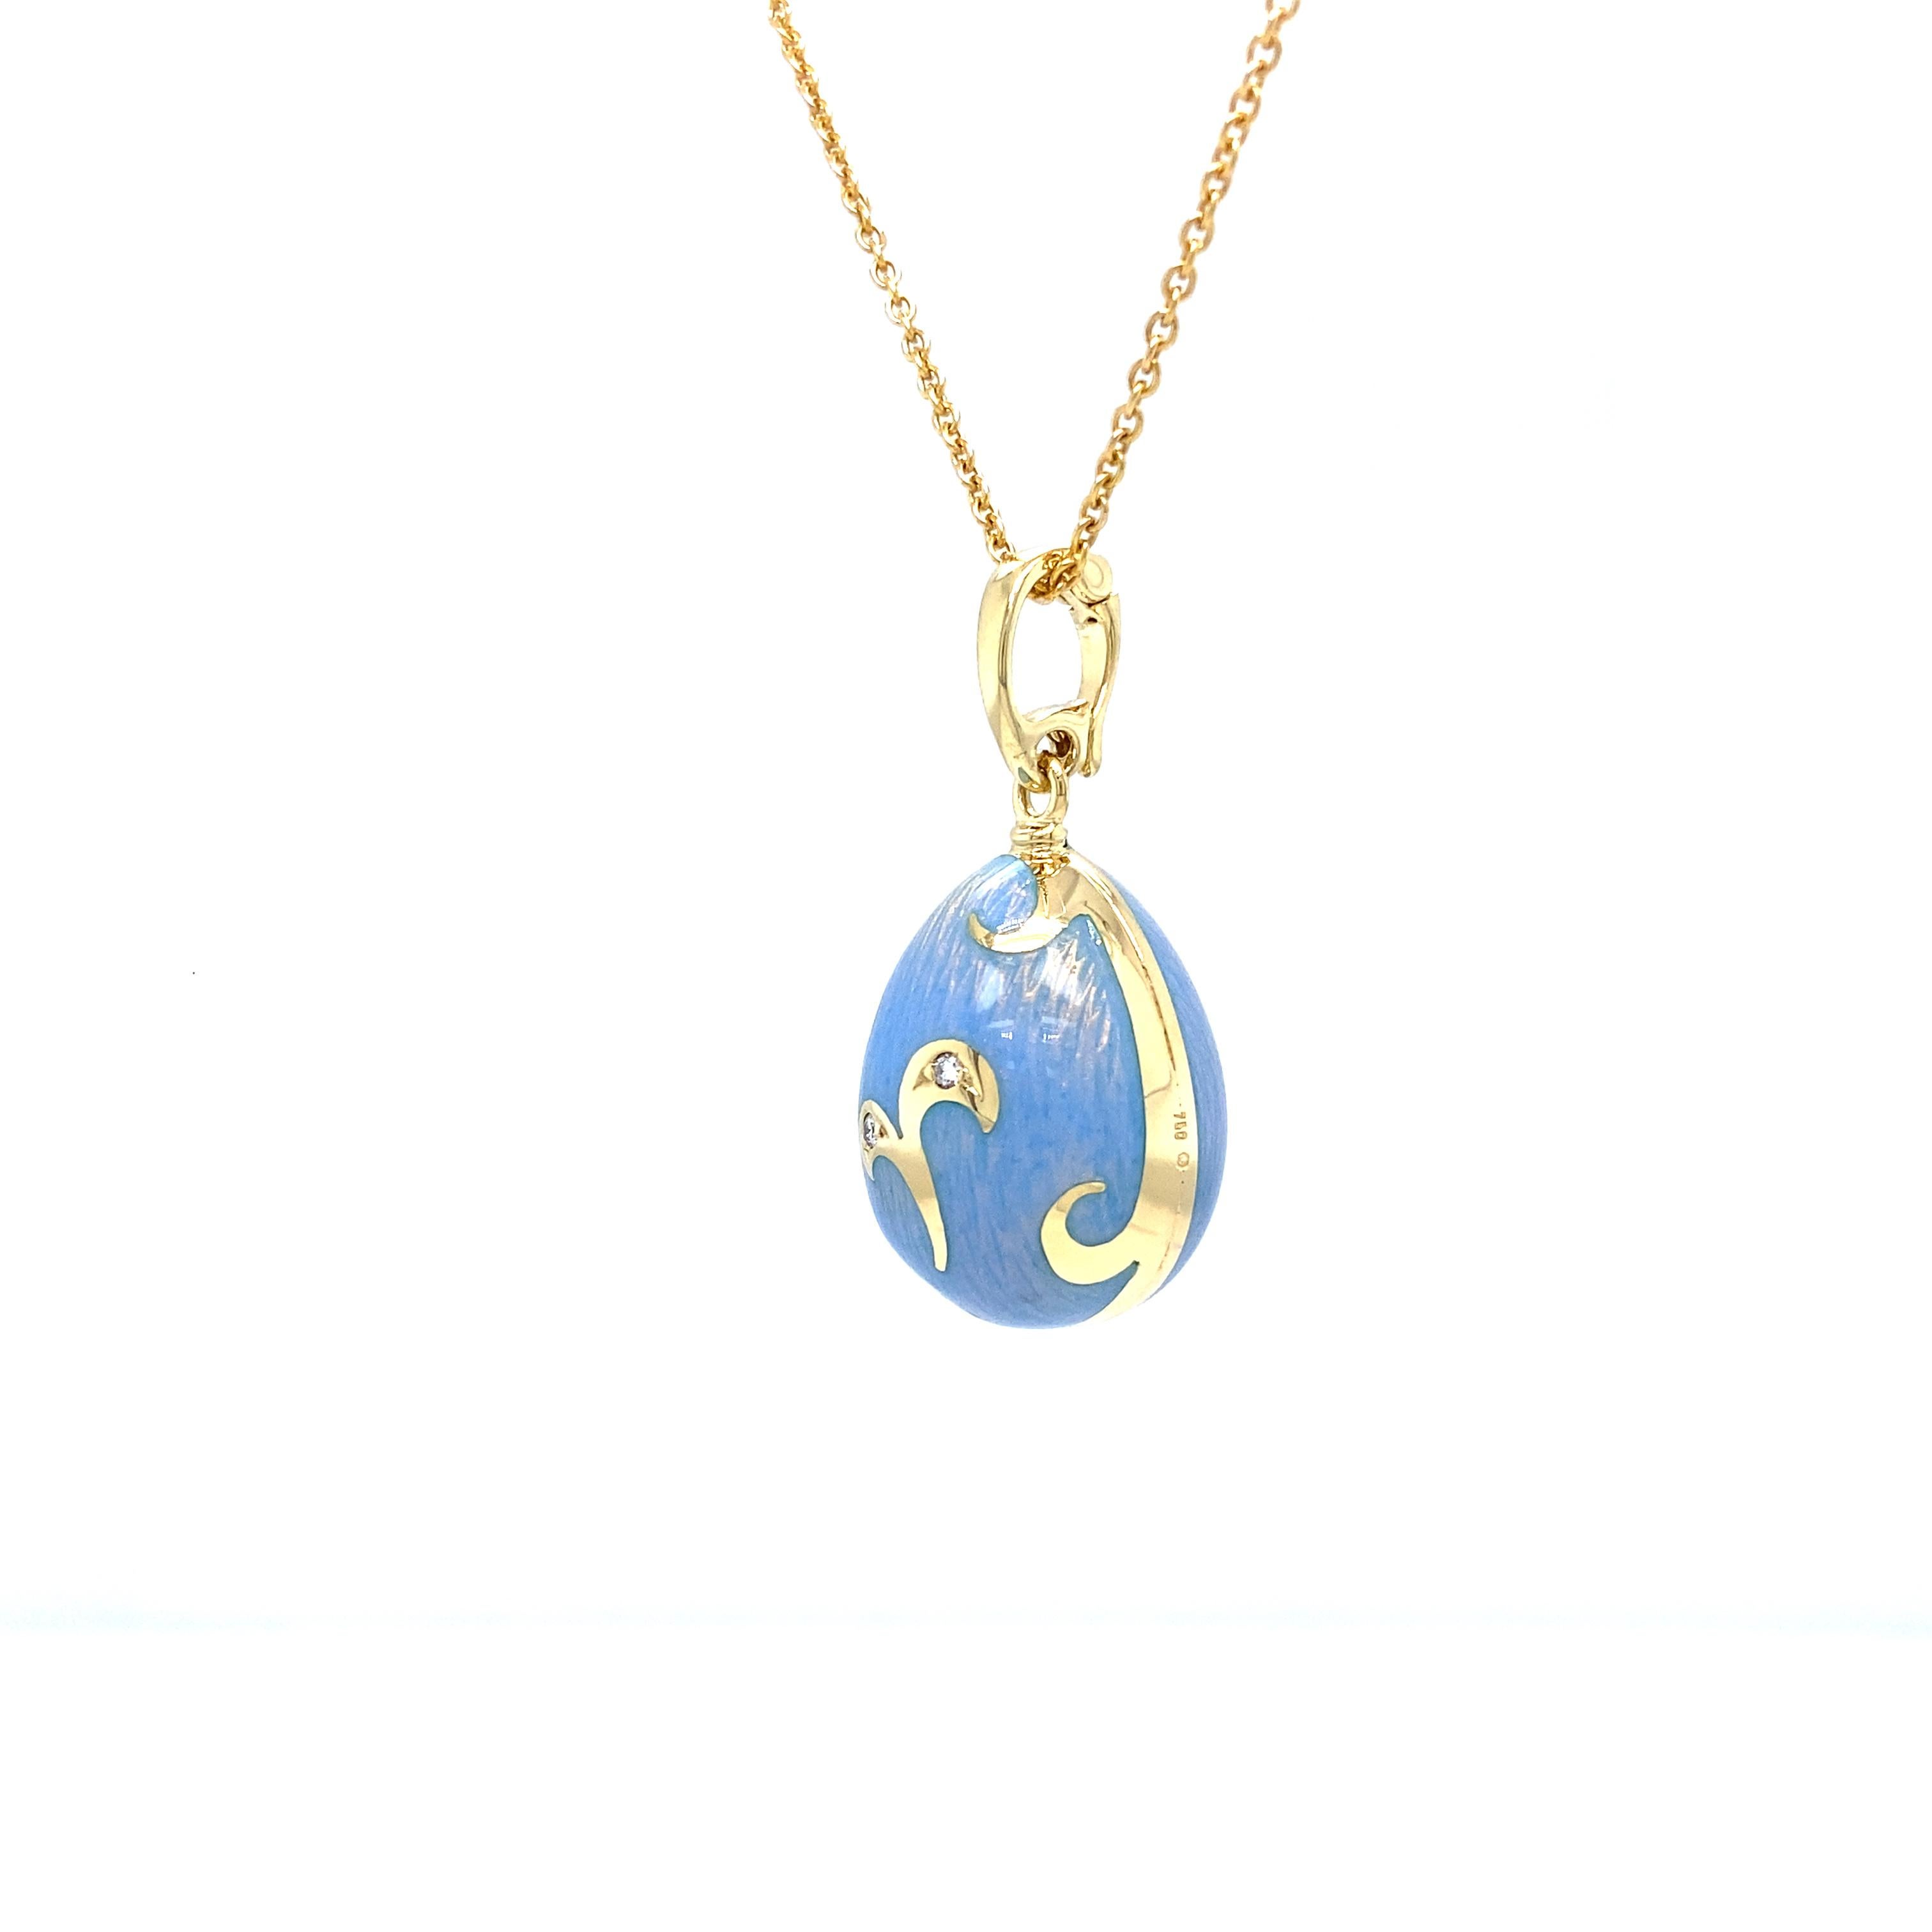 Edwardian Fabergé Egg Pendant Necklace Blue Opalescent Enamel 18k Yellow Gold 2 Diamonds For Sale